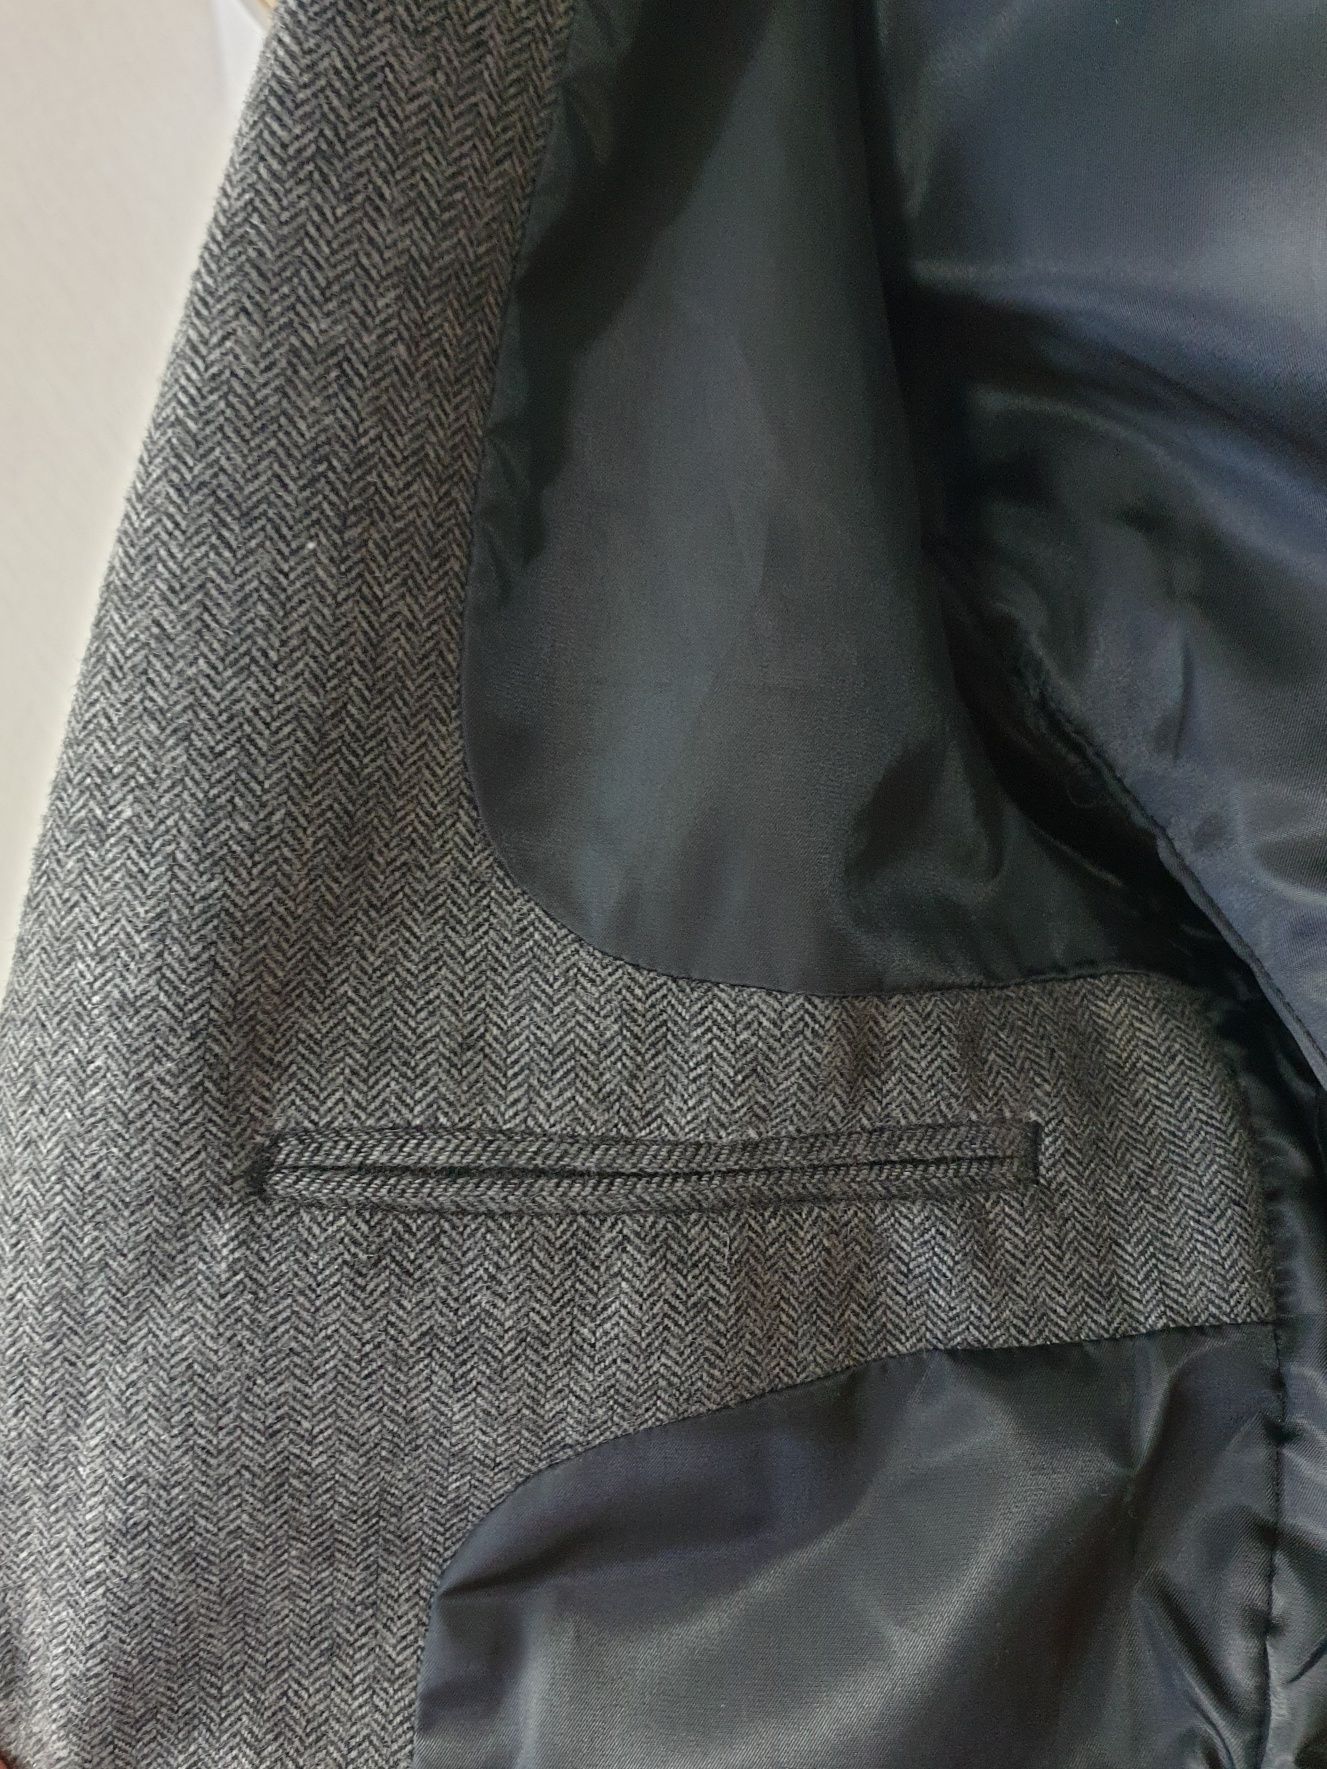 H&M - S-M_50 - 2 види - Піджак чоловічий Сірий твідовий мужской пиджак